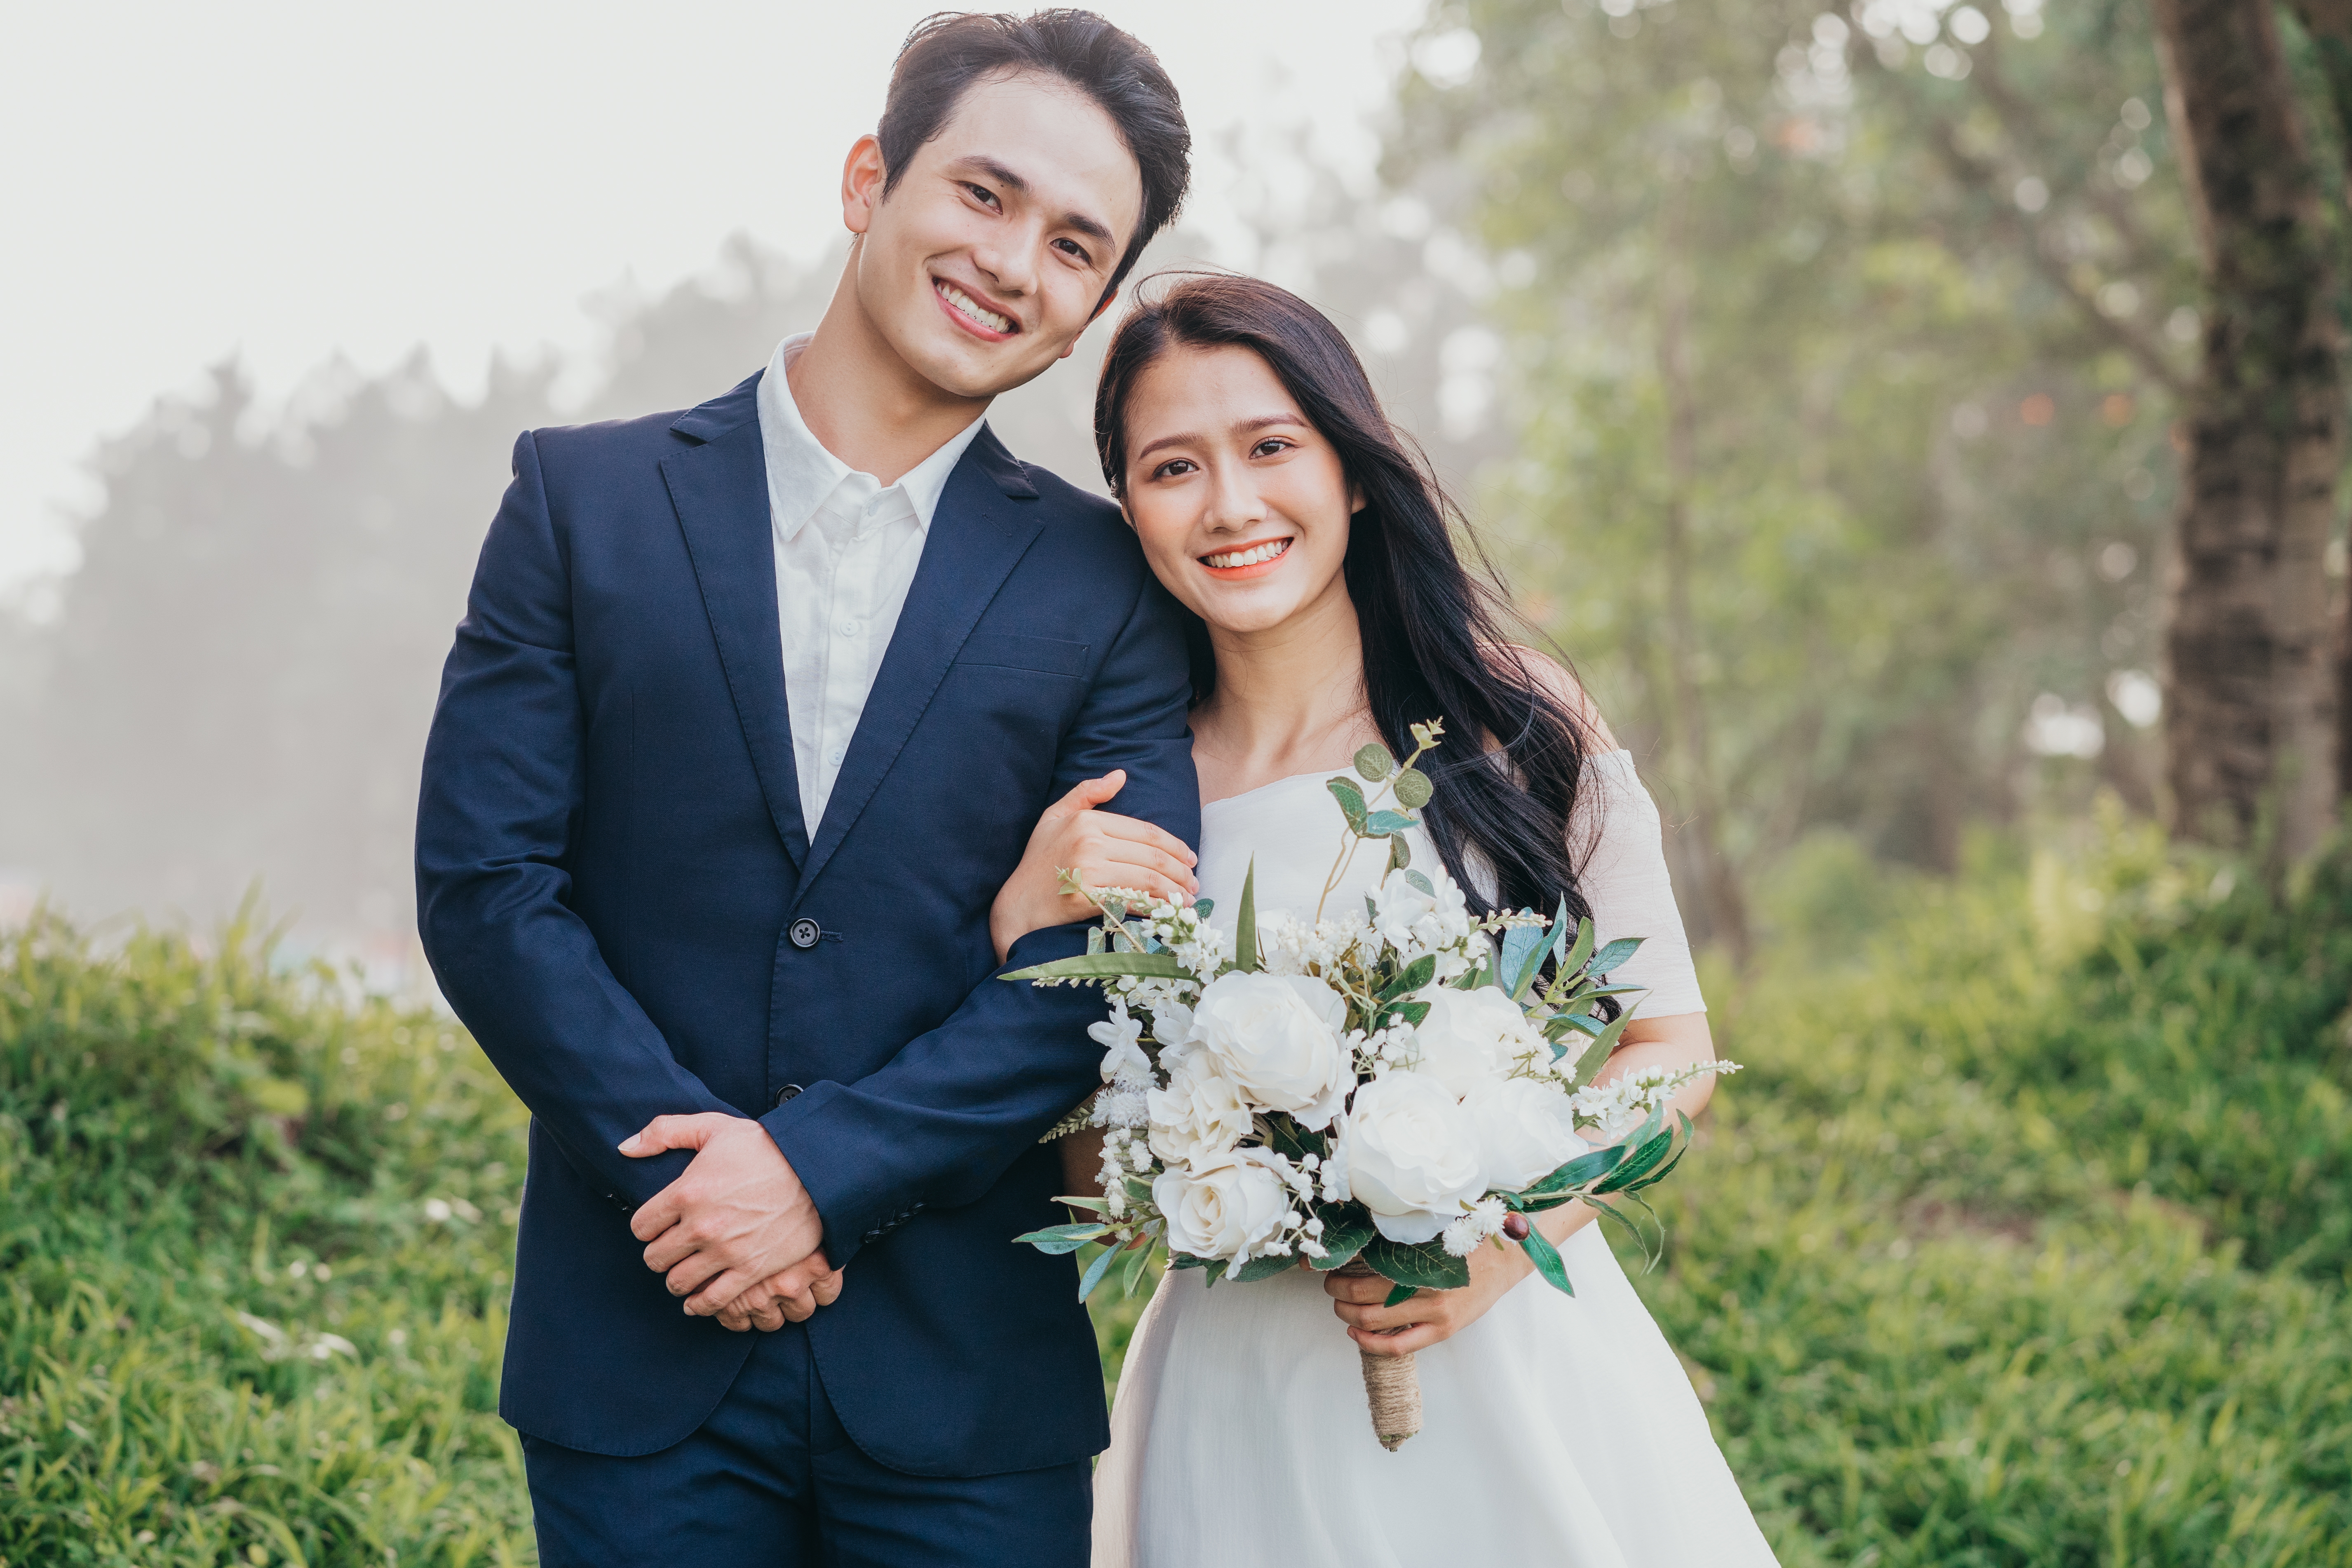 Un jeune couple asiatique le jour de son mariage | Source : Shutterstock